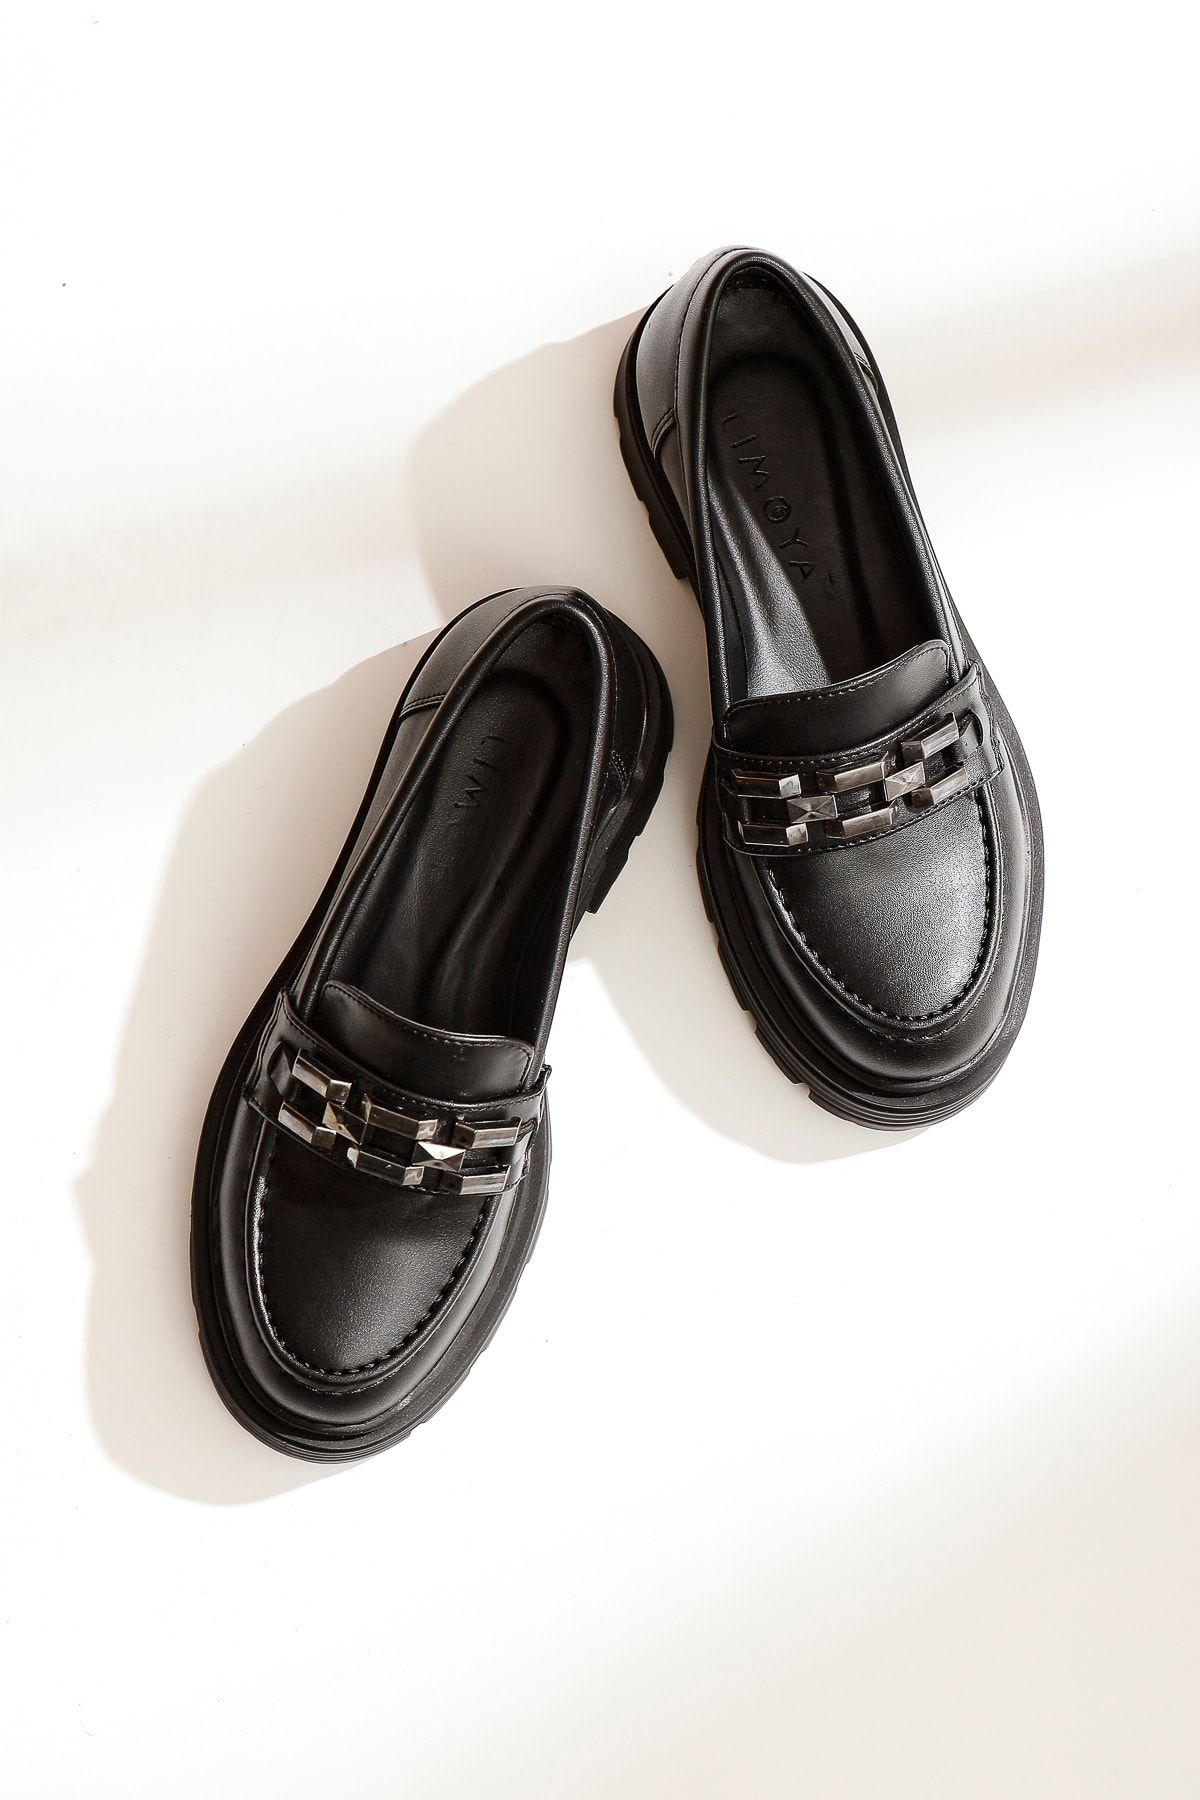 Limoya Benaz Siyah Fiyonk Detaylı Oxford Ayakkabı